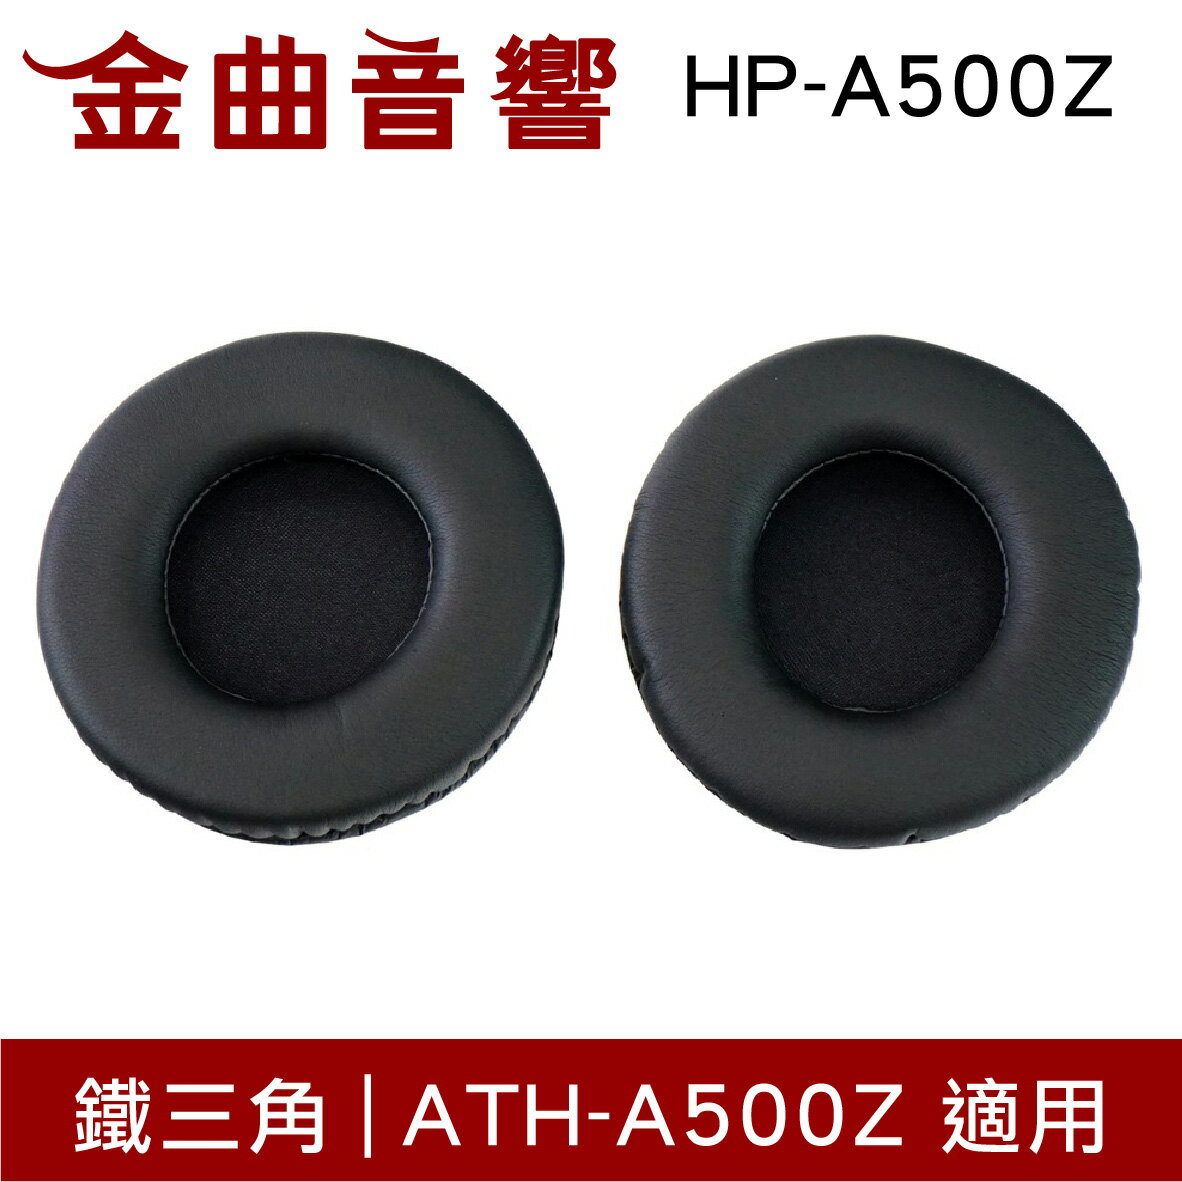 鐵三角 HP-A500Z 替換耳罩 一對 ATH-A500Z 適用 | 金曲音響